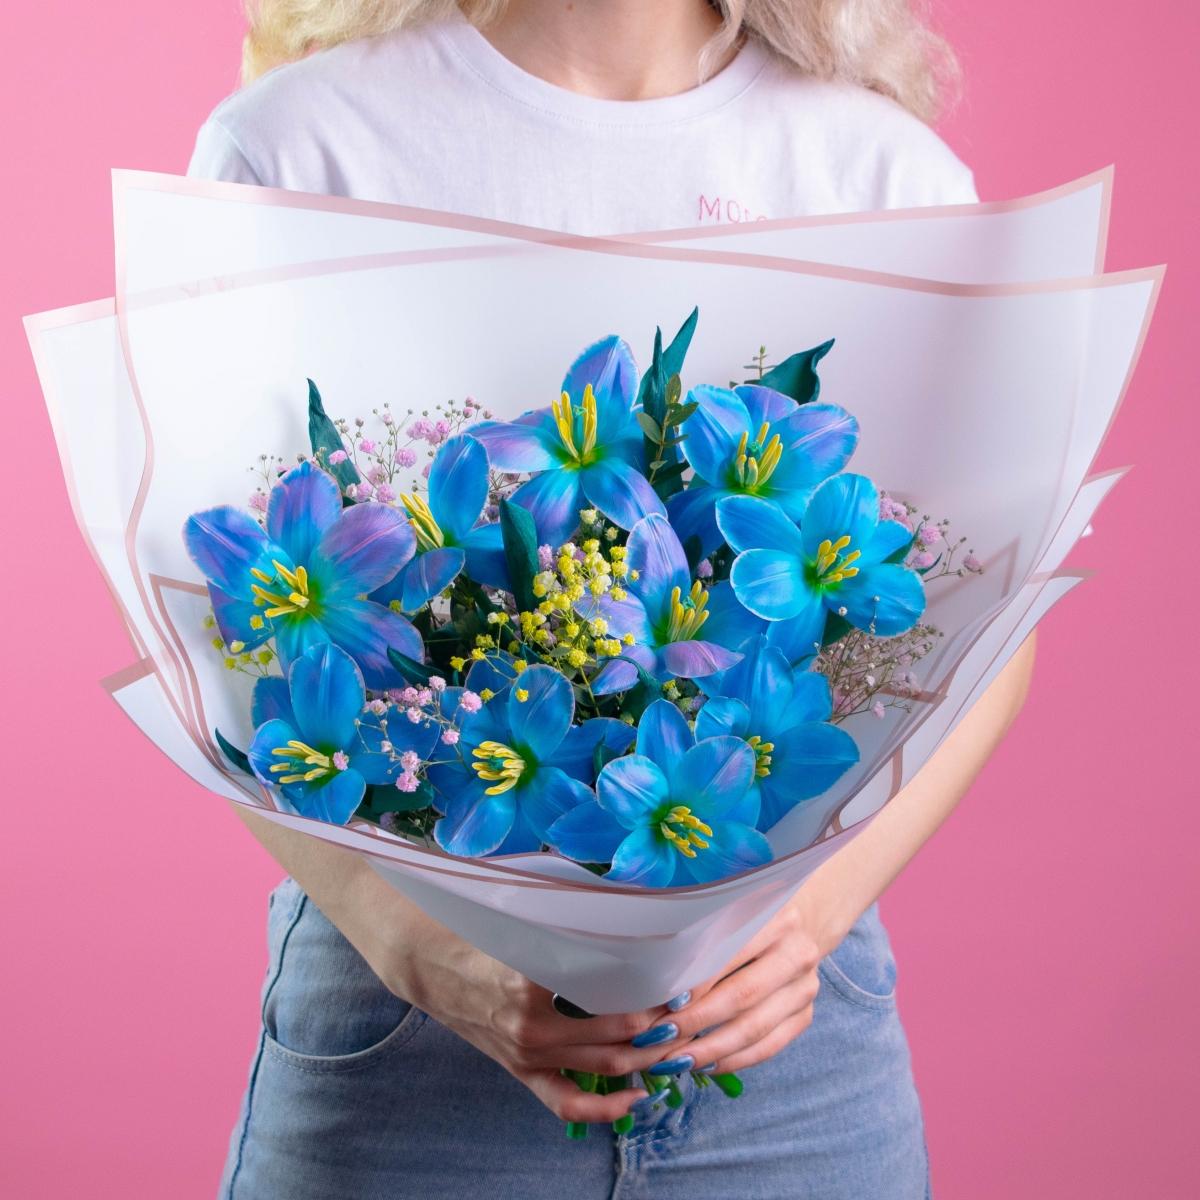 11 голубых тюльпанов с гипсофилой